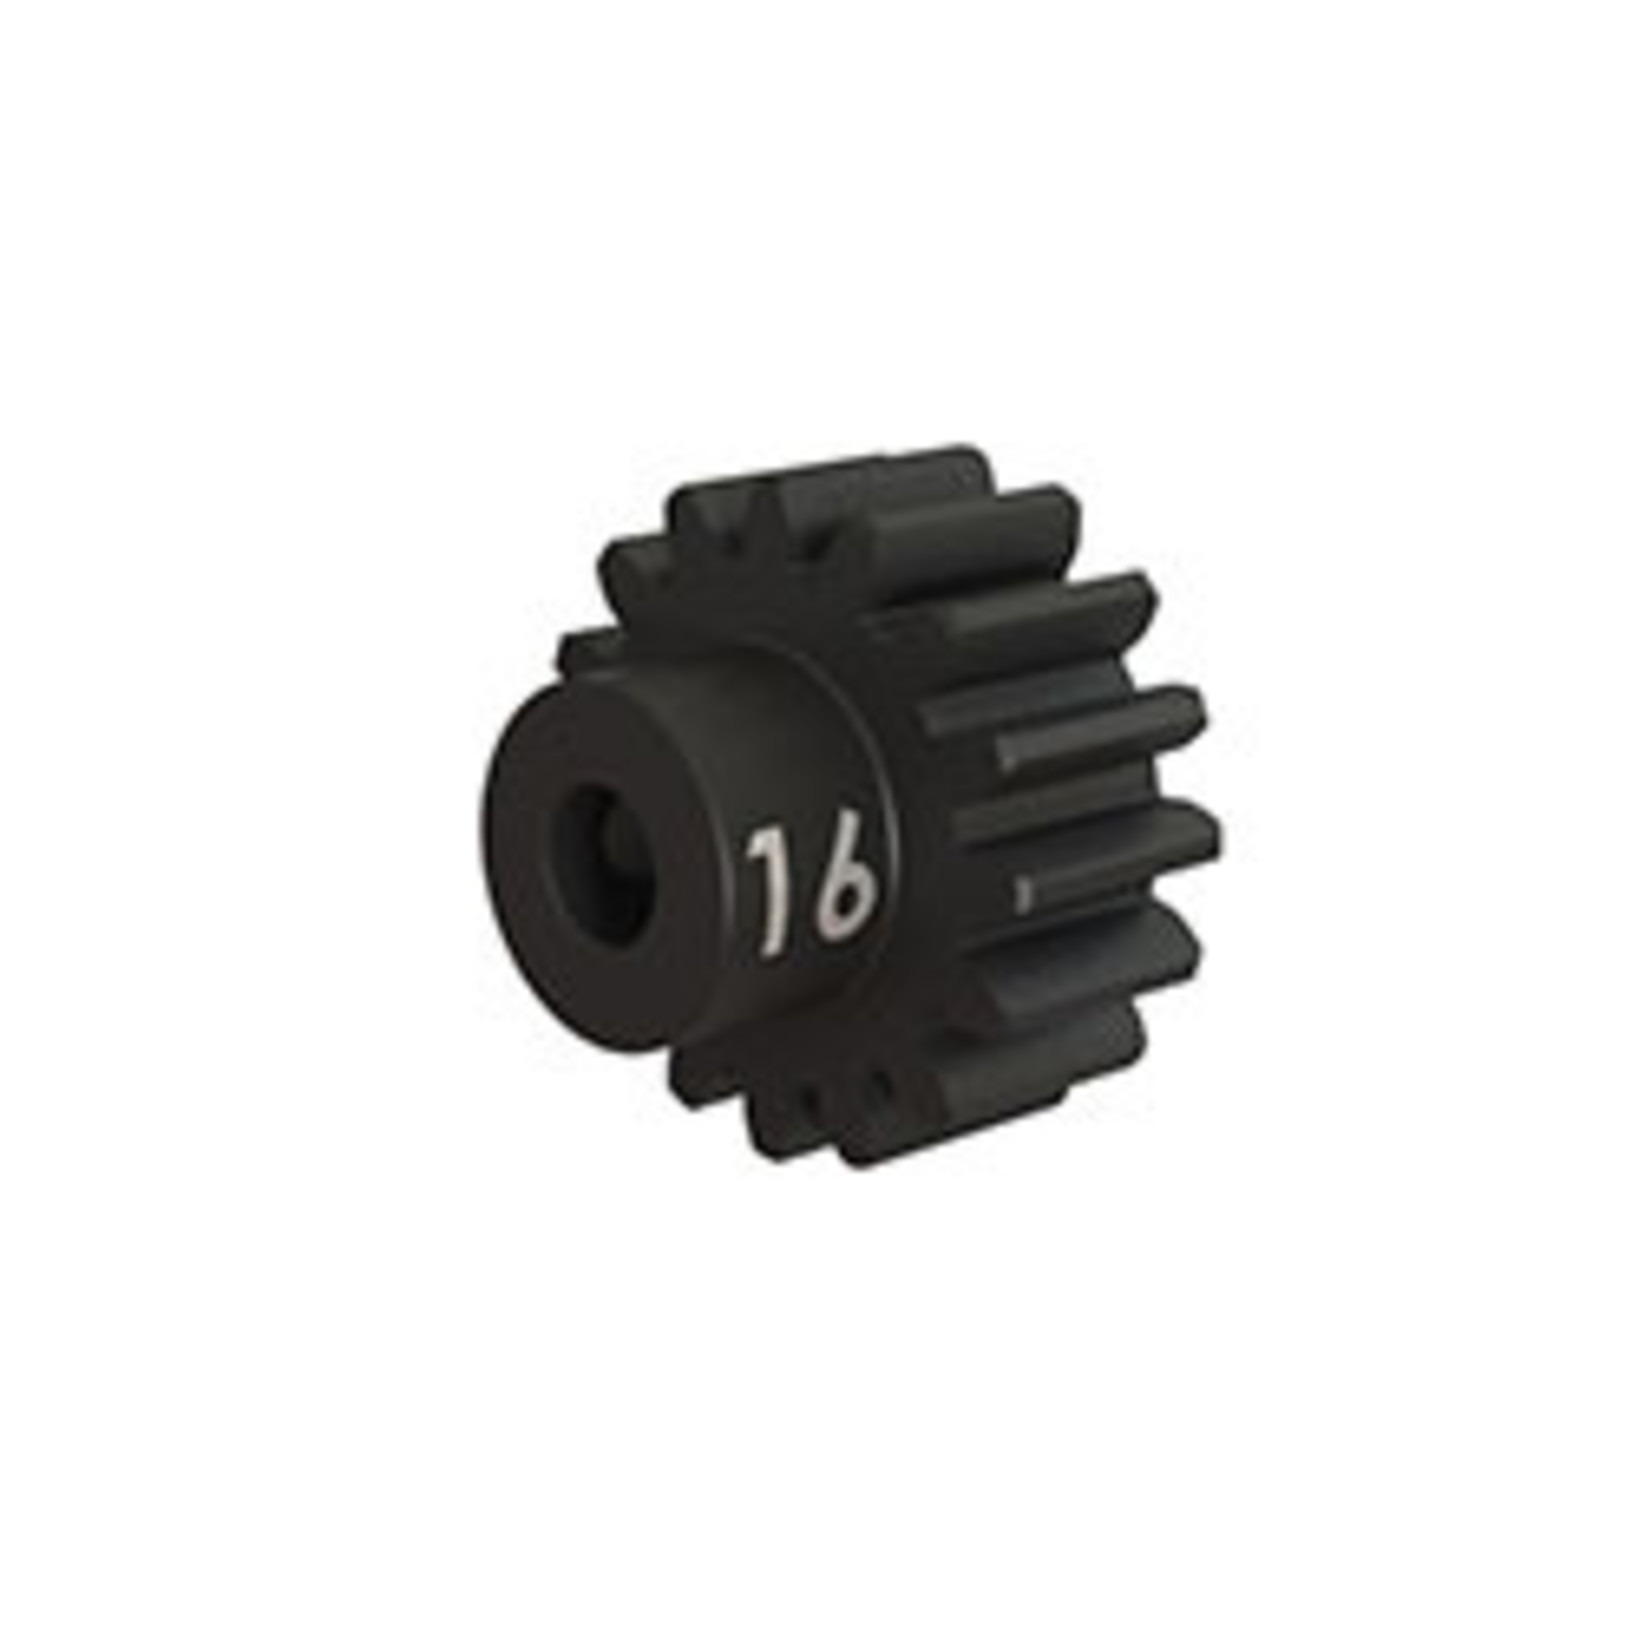 Traxxas 3946X Gear, 16-T pinion (32-p), heavy duty (machined, hardened steel) (fits 3mm shaft)/ set screw